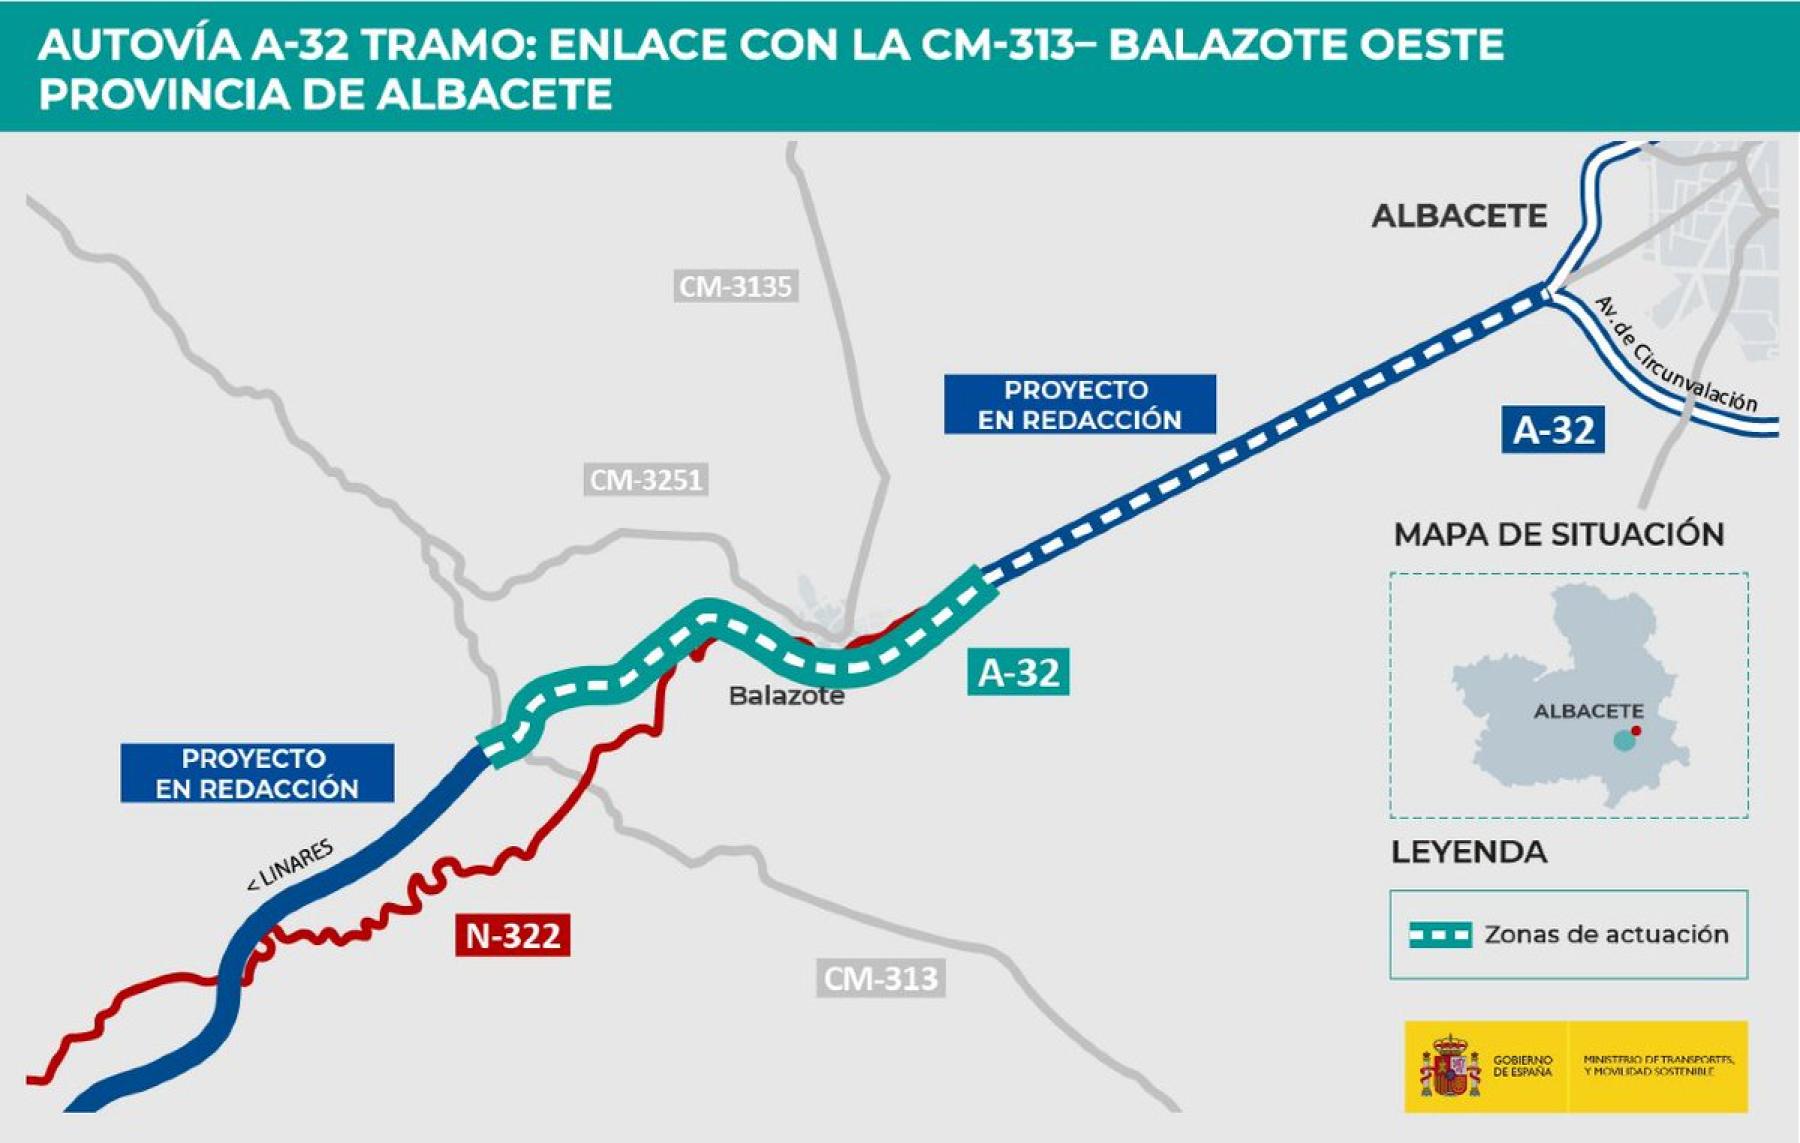 Transportes adjudica por 97 millones de euros las obras del tramo de la autovía A-32 entre el enlace CM-313 y Balazote Oeste